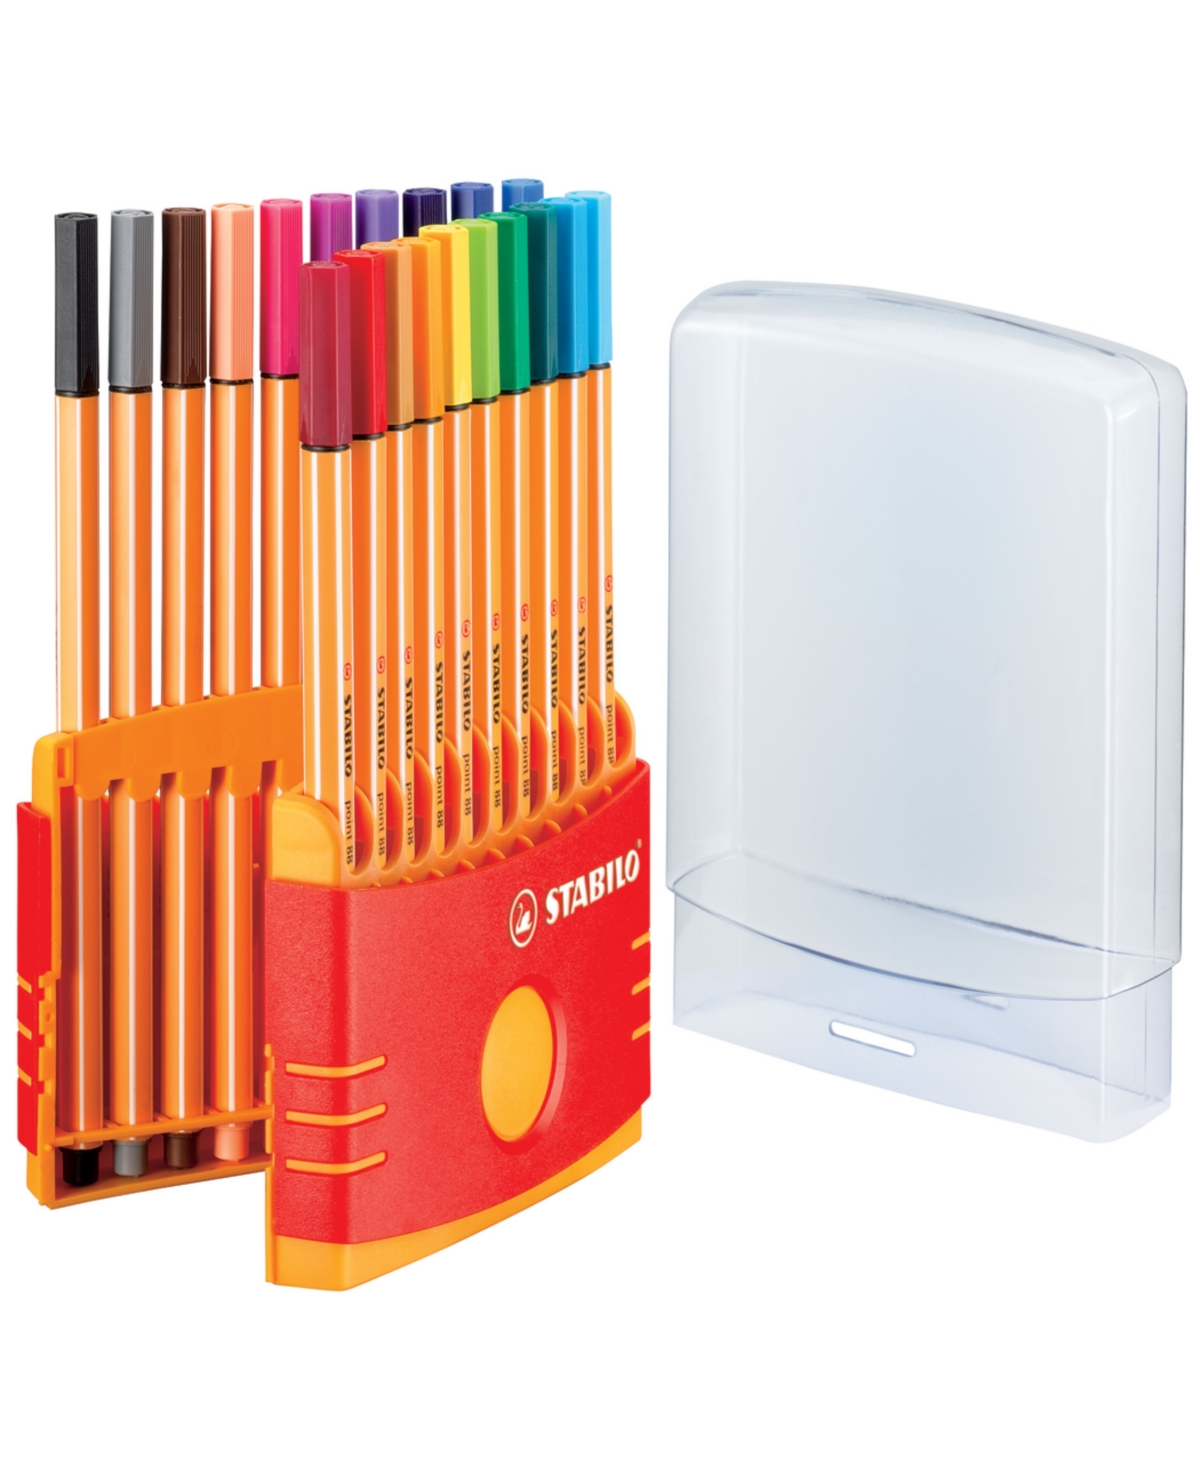 point 88 Marker Color Pen Parade Set, 20 Pieces - Multi